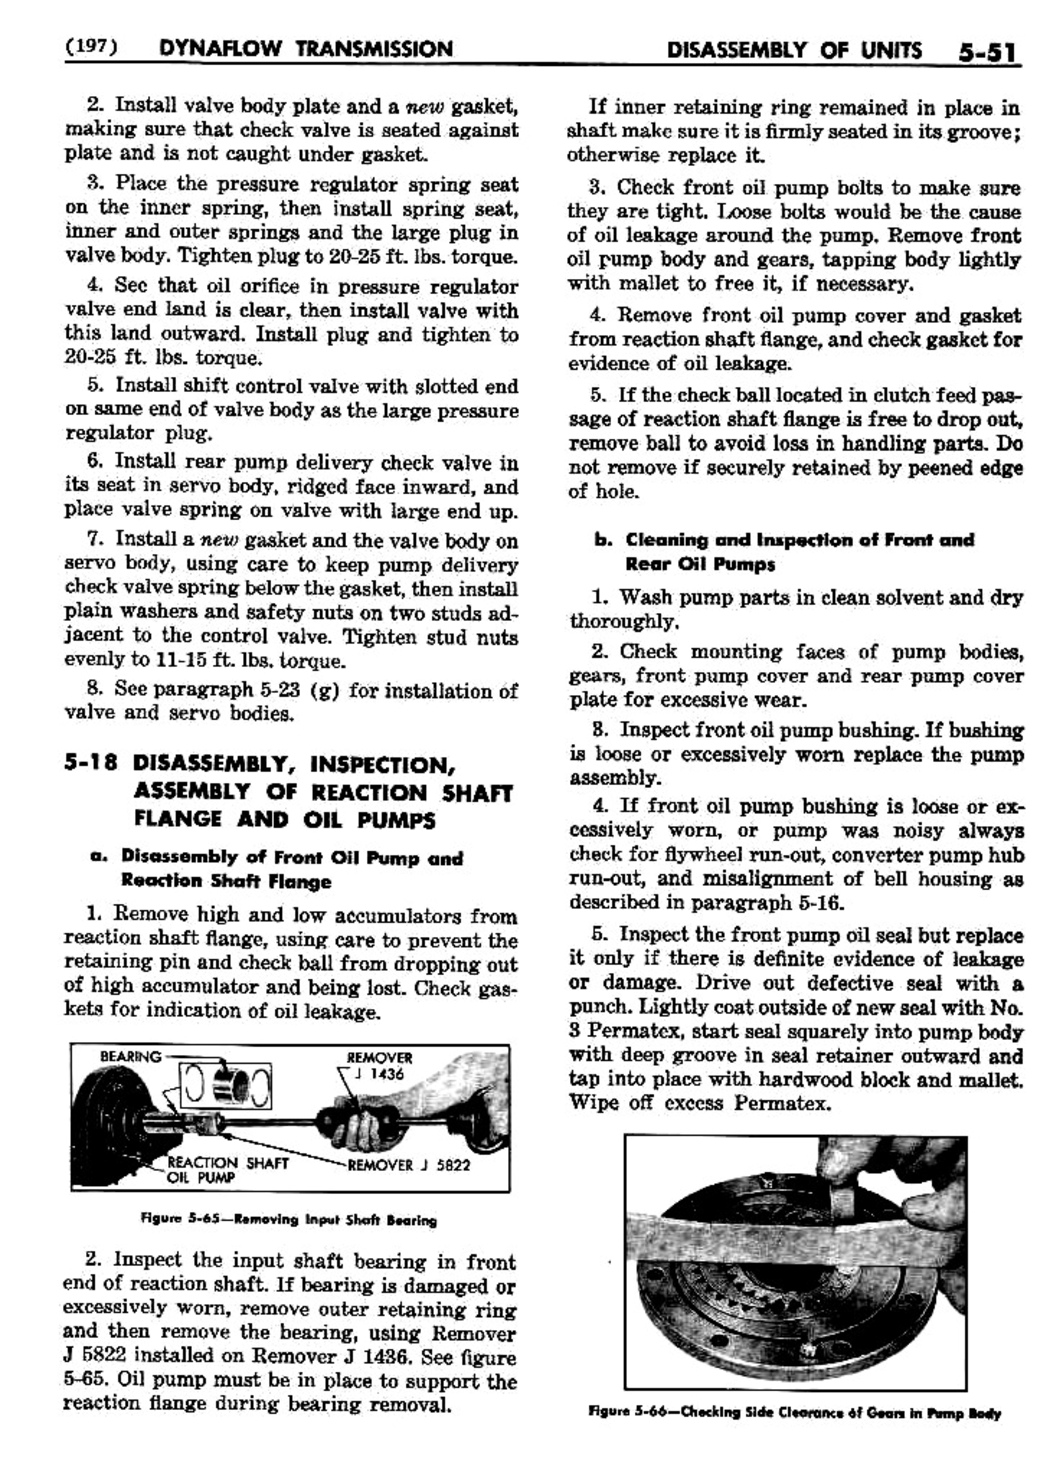 n_06 1956 Buick Shop Manual - Dynaflow-051-051.jpg